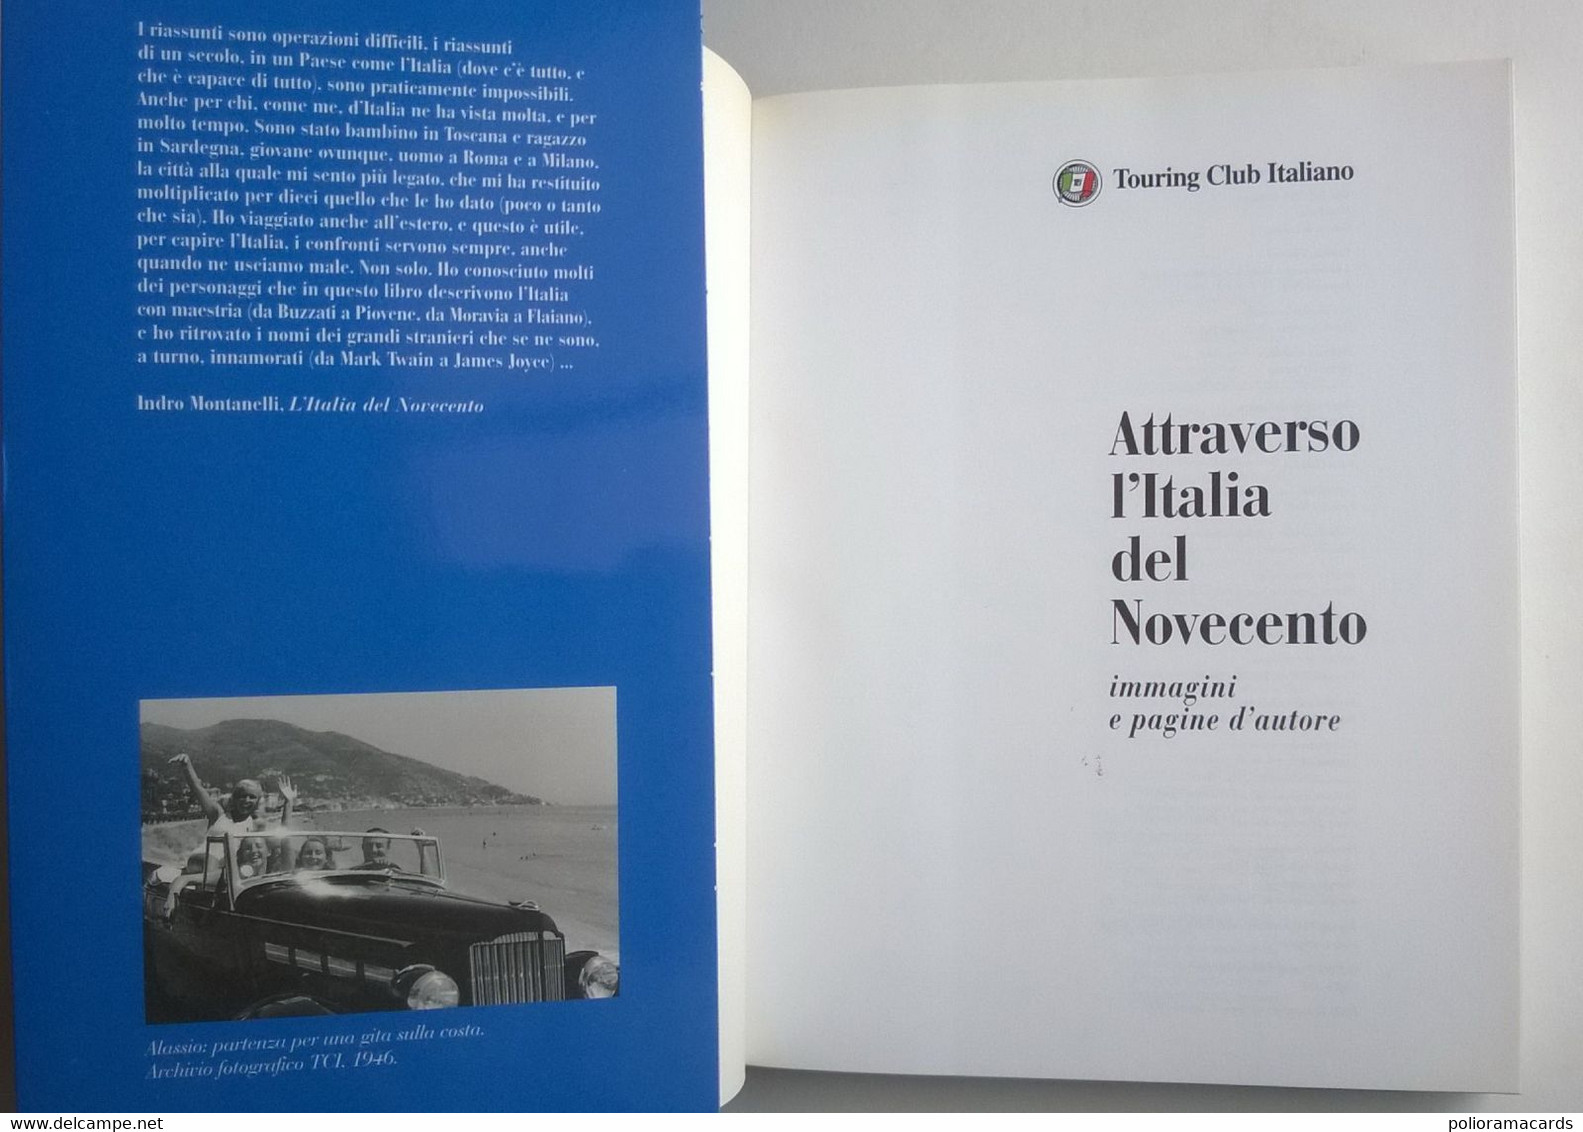 Attraverso L'Italia Del Novecento - Immagini E Pagine D’Autore 1999 (TCI) - Turismo, Viaggi